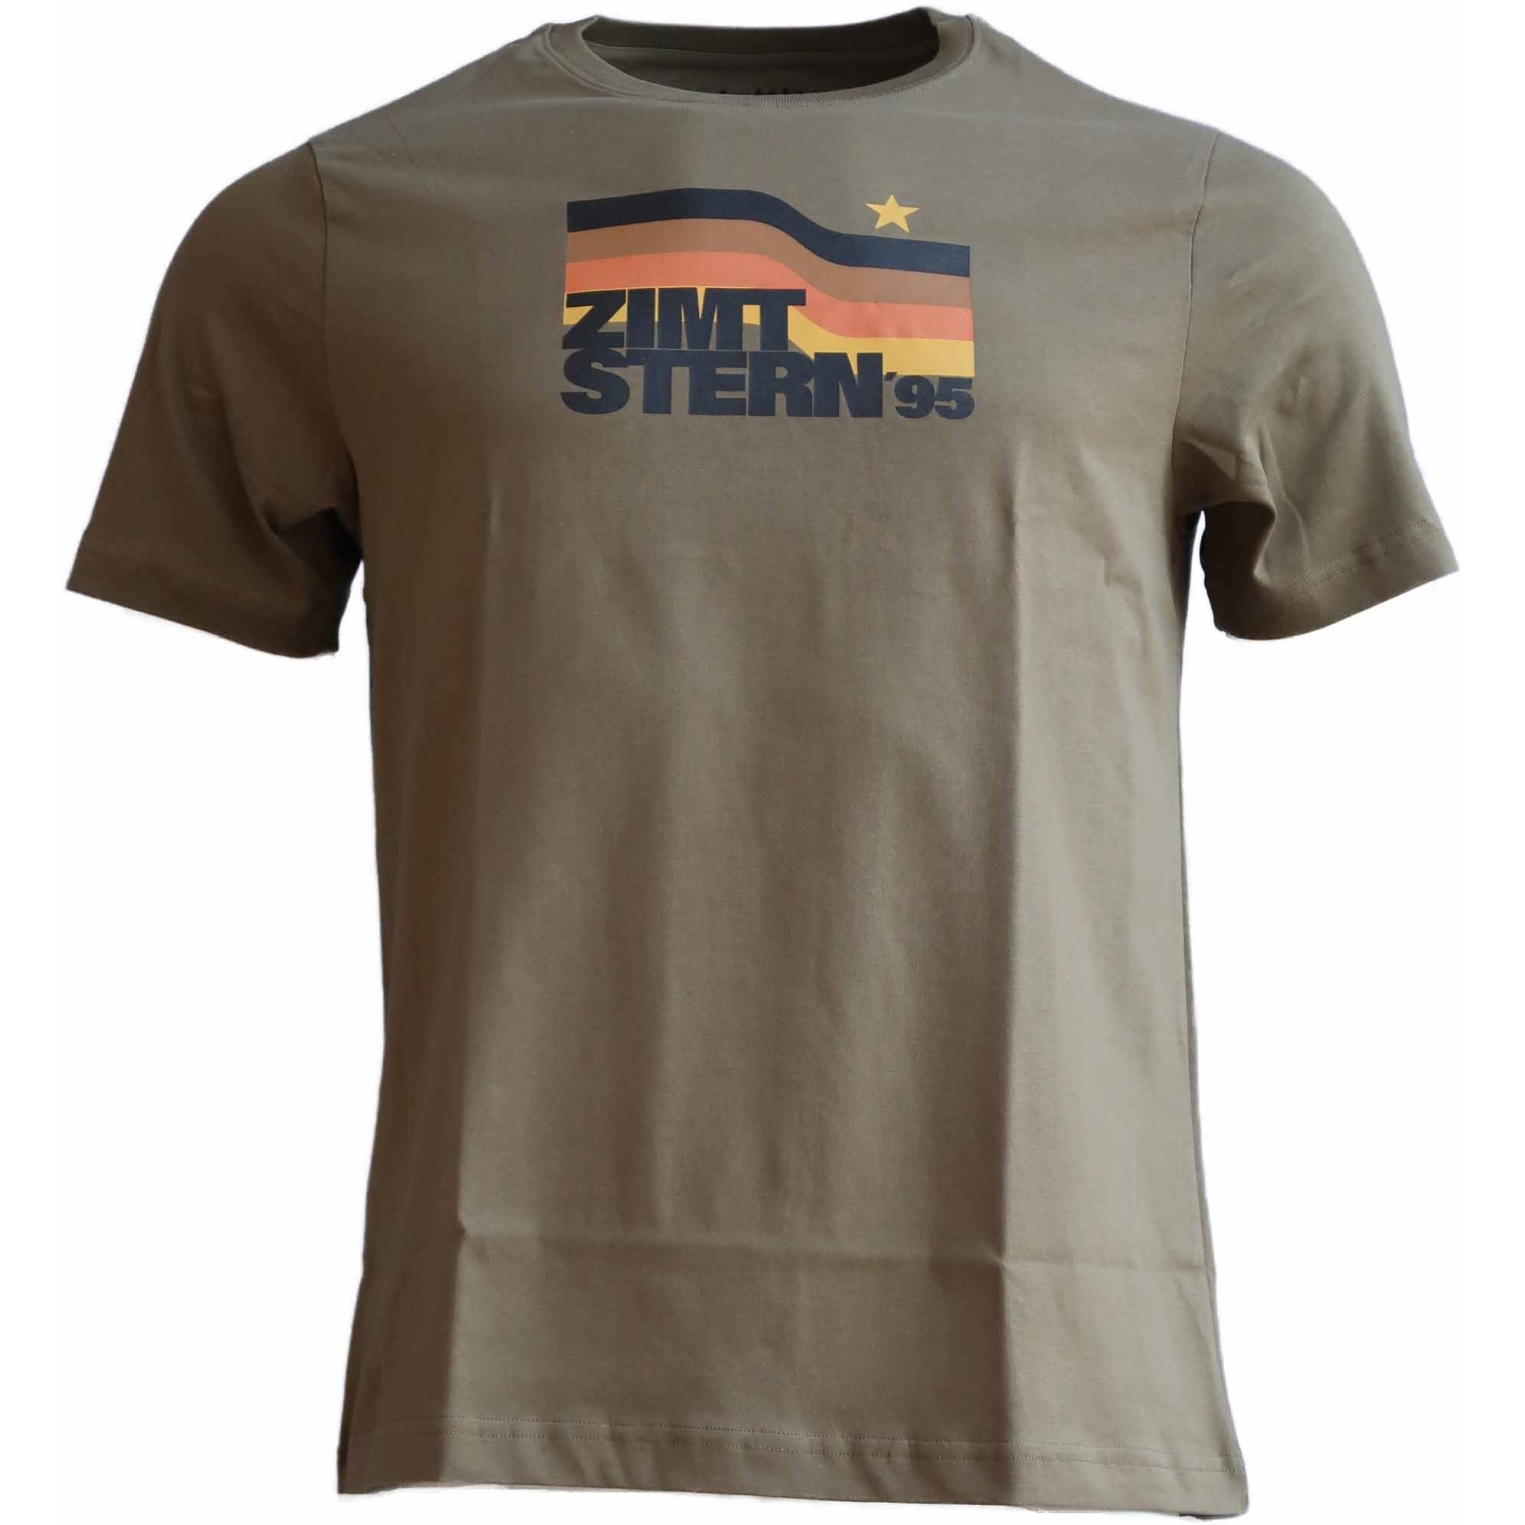 Produktbild von Zimtstern Northz T-Shirt Herren - Military Olive